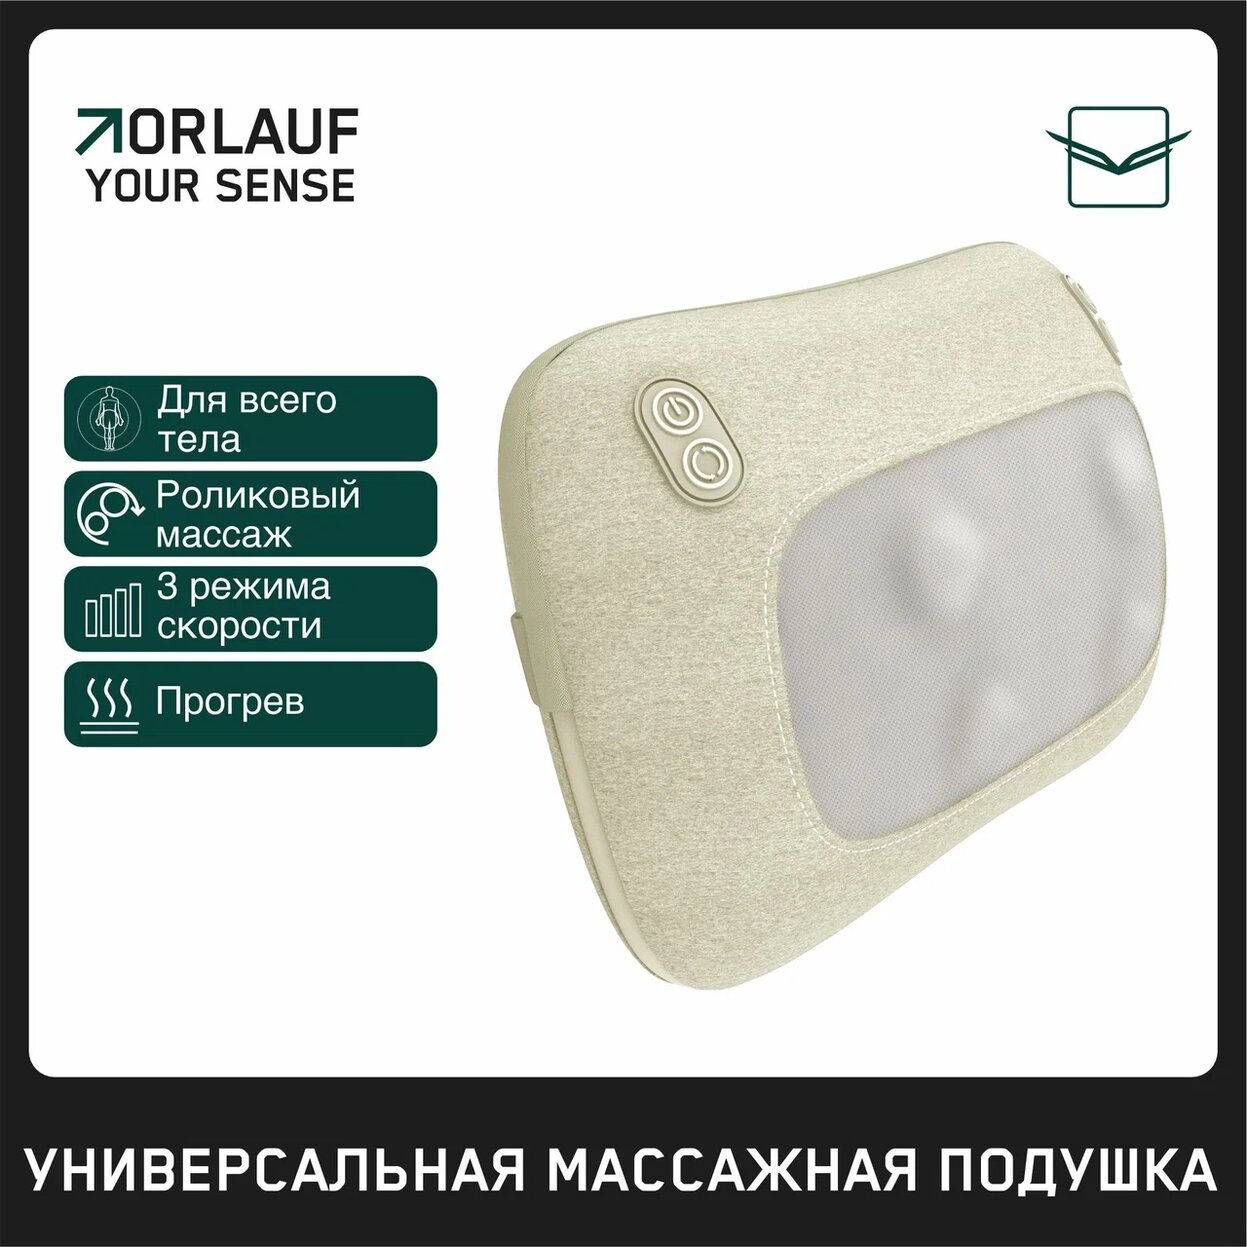 Your Sense в Челябинске по цене 9400 ₽ в категории массажеры Orlauf